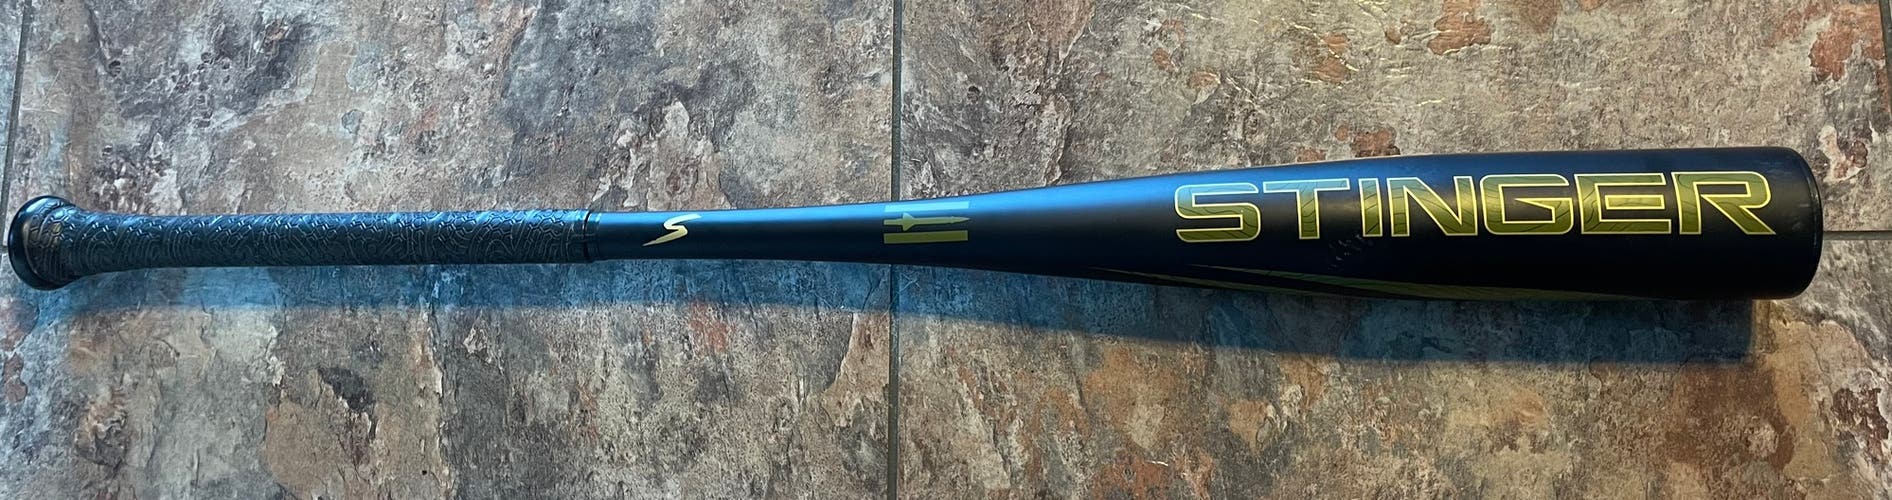 (-3) Stinger missile 3 Baseball Bat